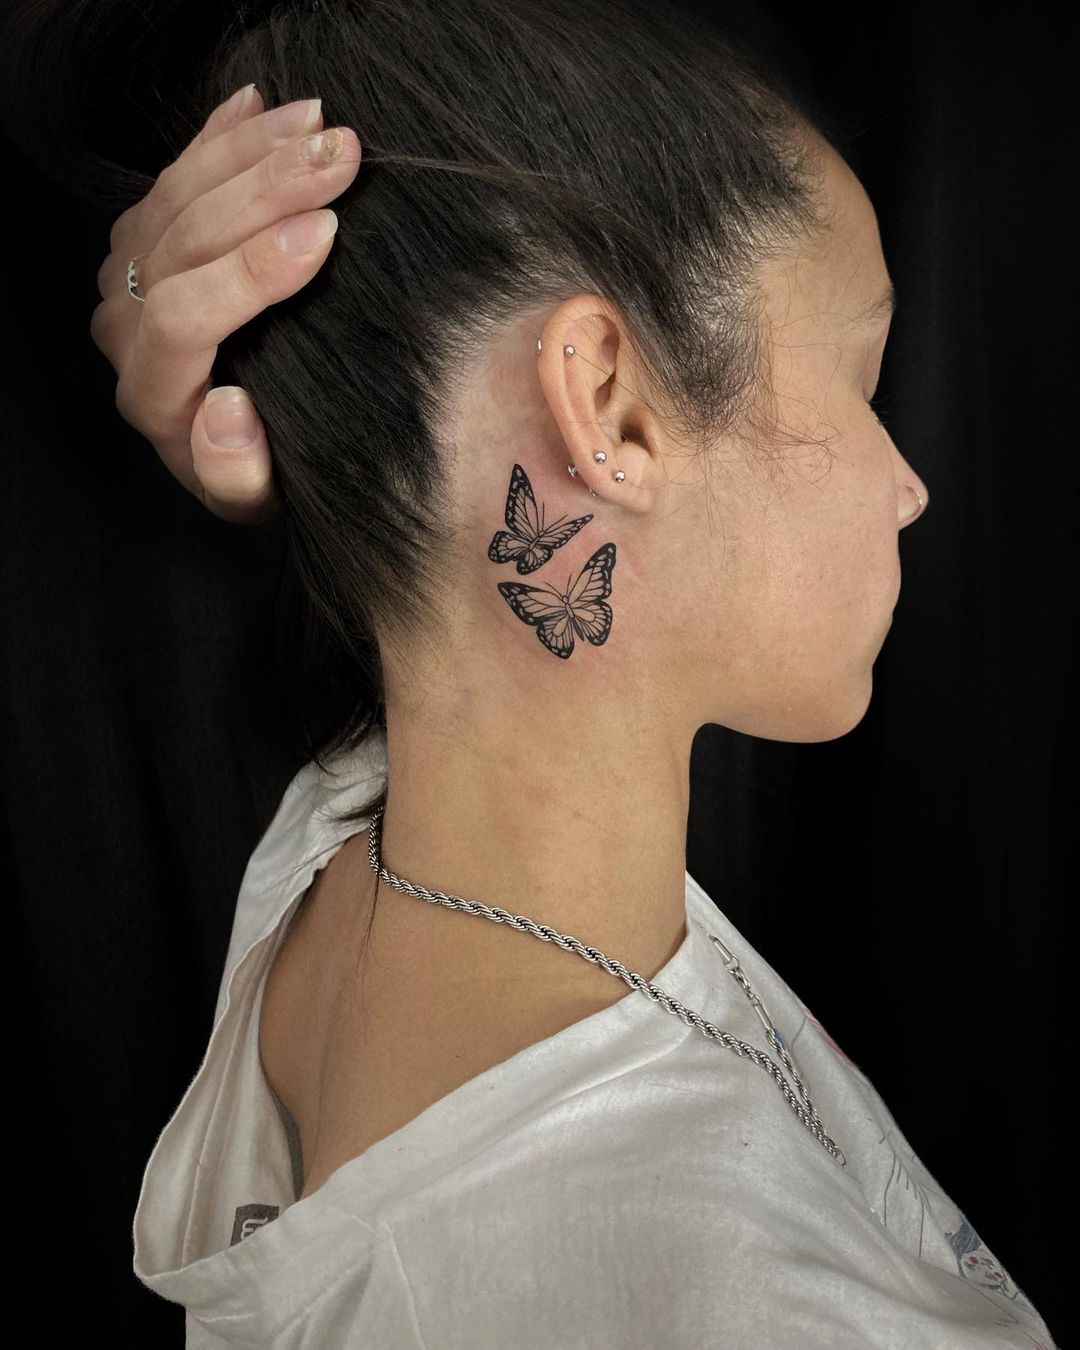 Butterfly Behind Ear Tattoo Ideas 17